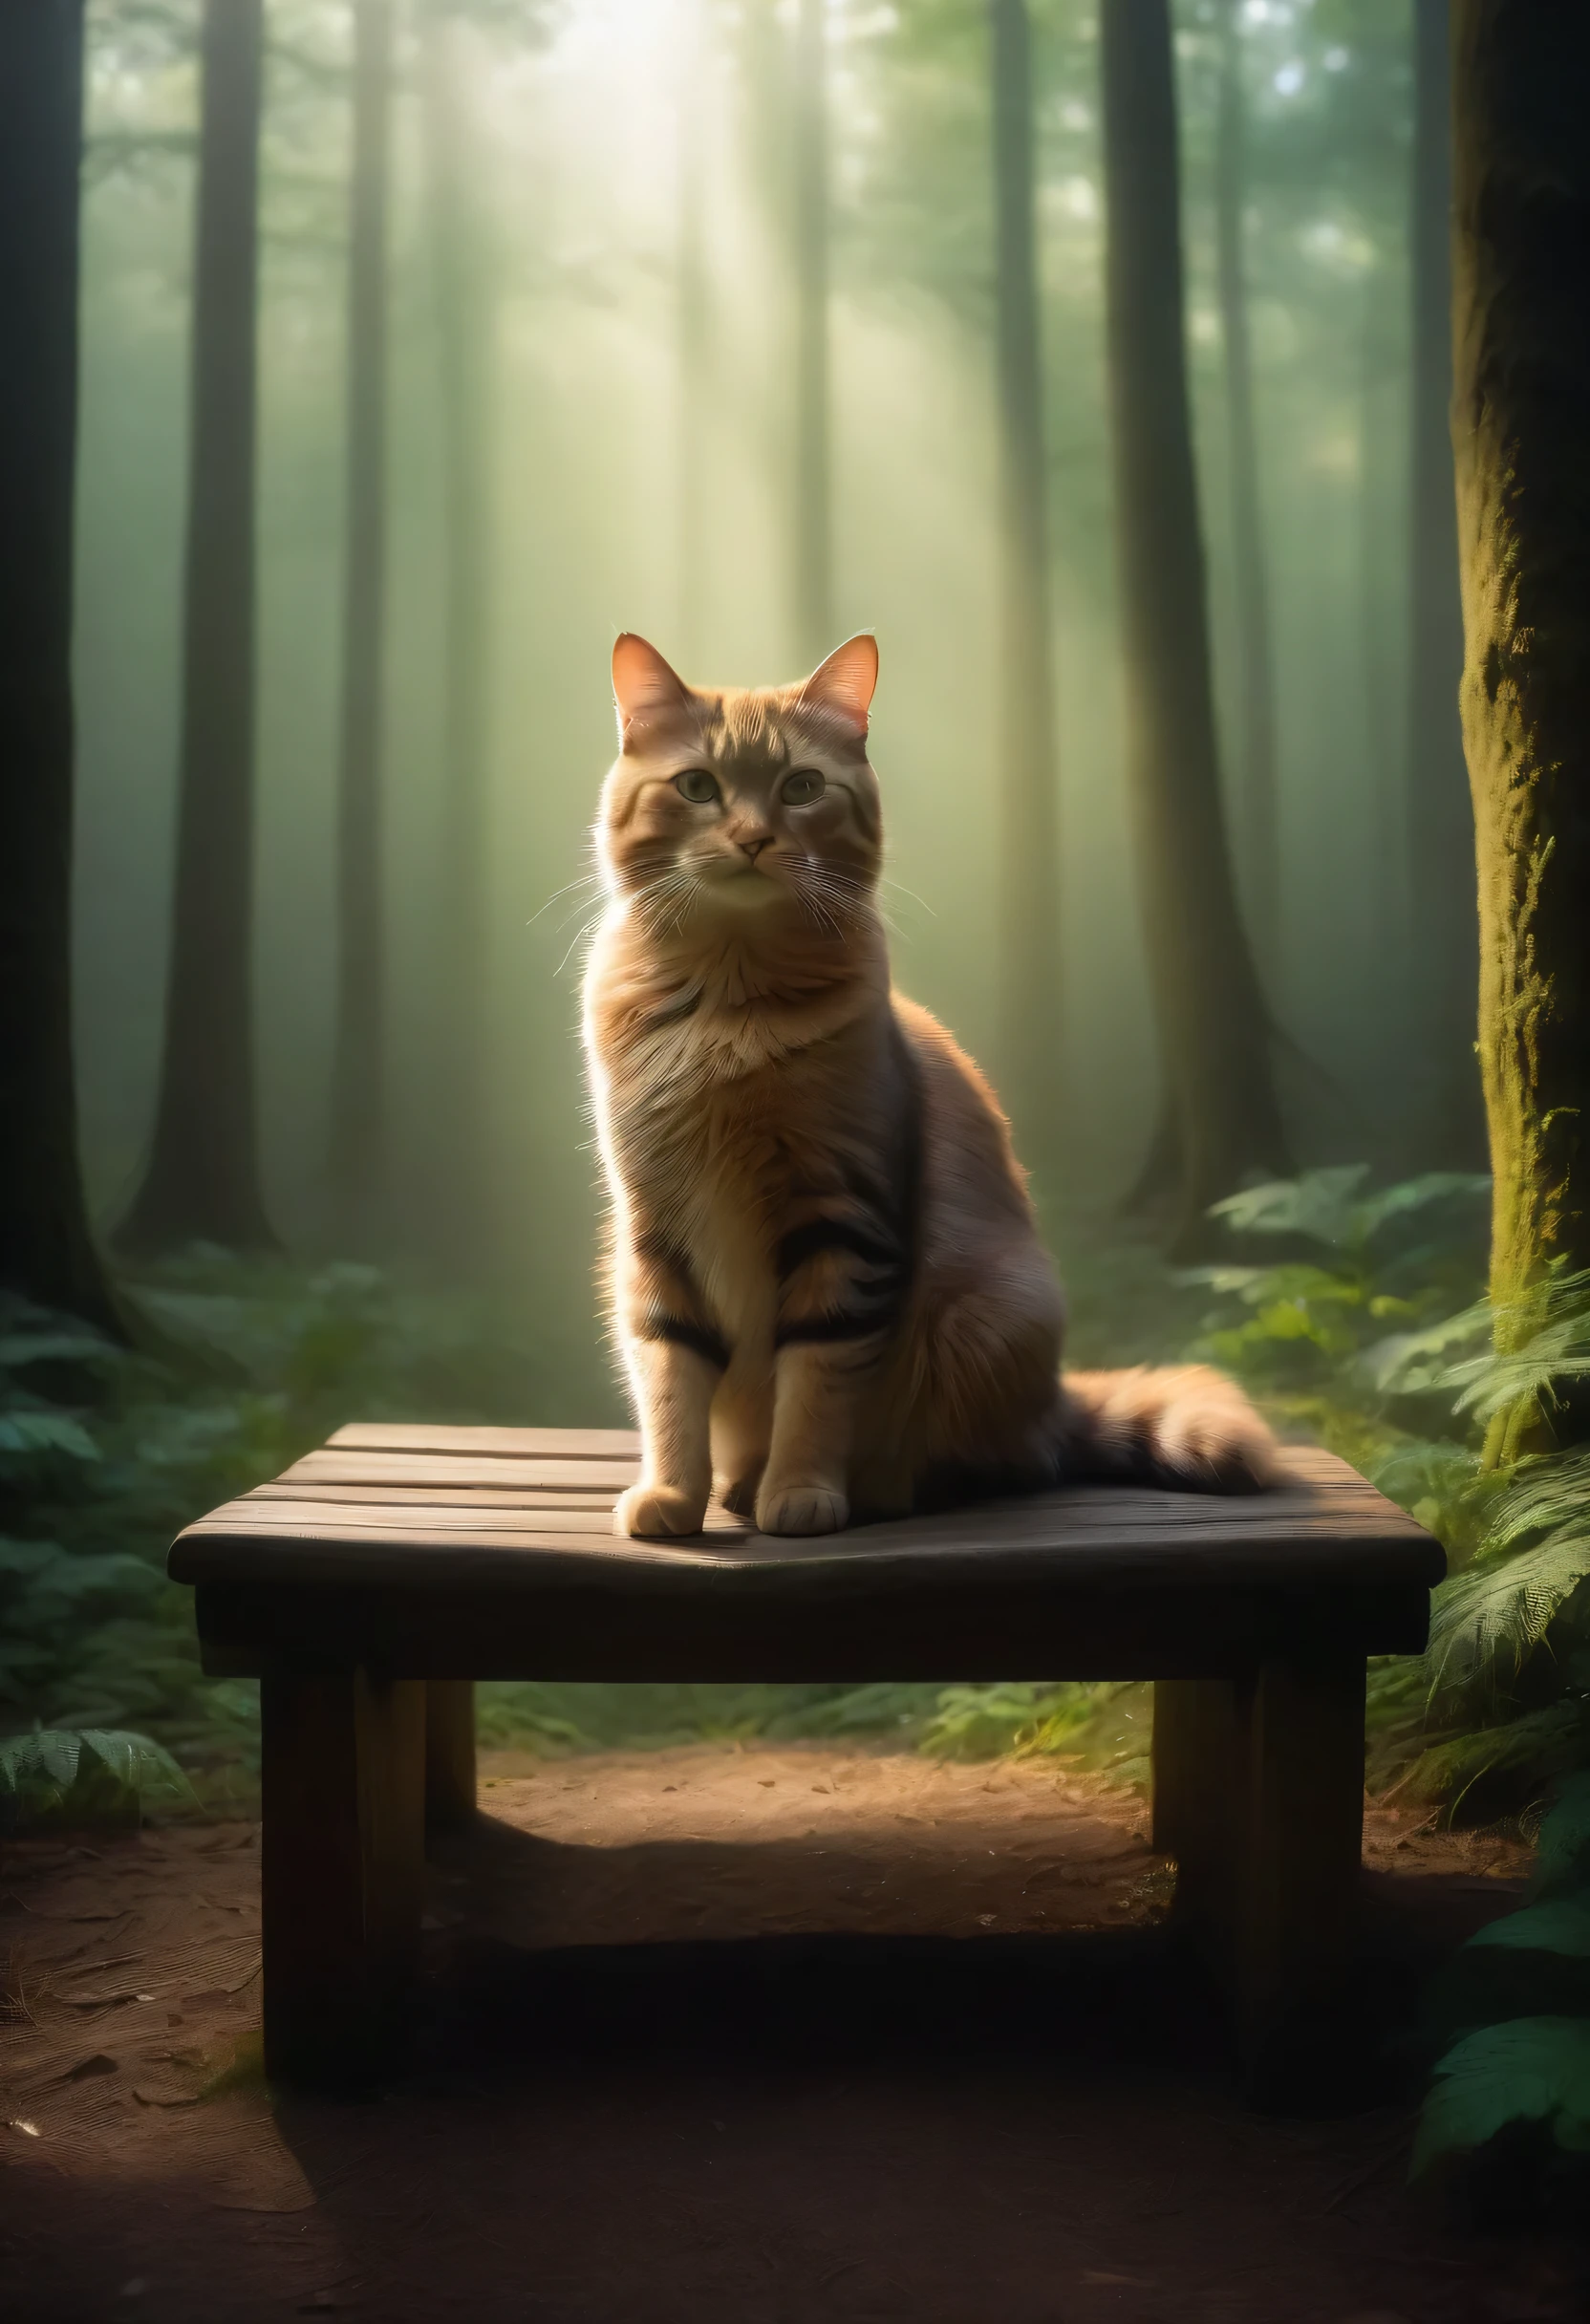 (ทินดอลล์เอฟเฟ็กต์: 1.1), แสงจะกระจัดกระจายแค่ไหน, ป่าหมอก, แมวนั่งอยู่บนม้านั่งในป่าที่มีต้นไม้, and the ทินดอลล์เอฟเฟ็กต์ allows light to shine through and illuminate the cat.